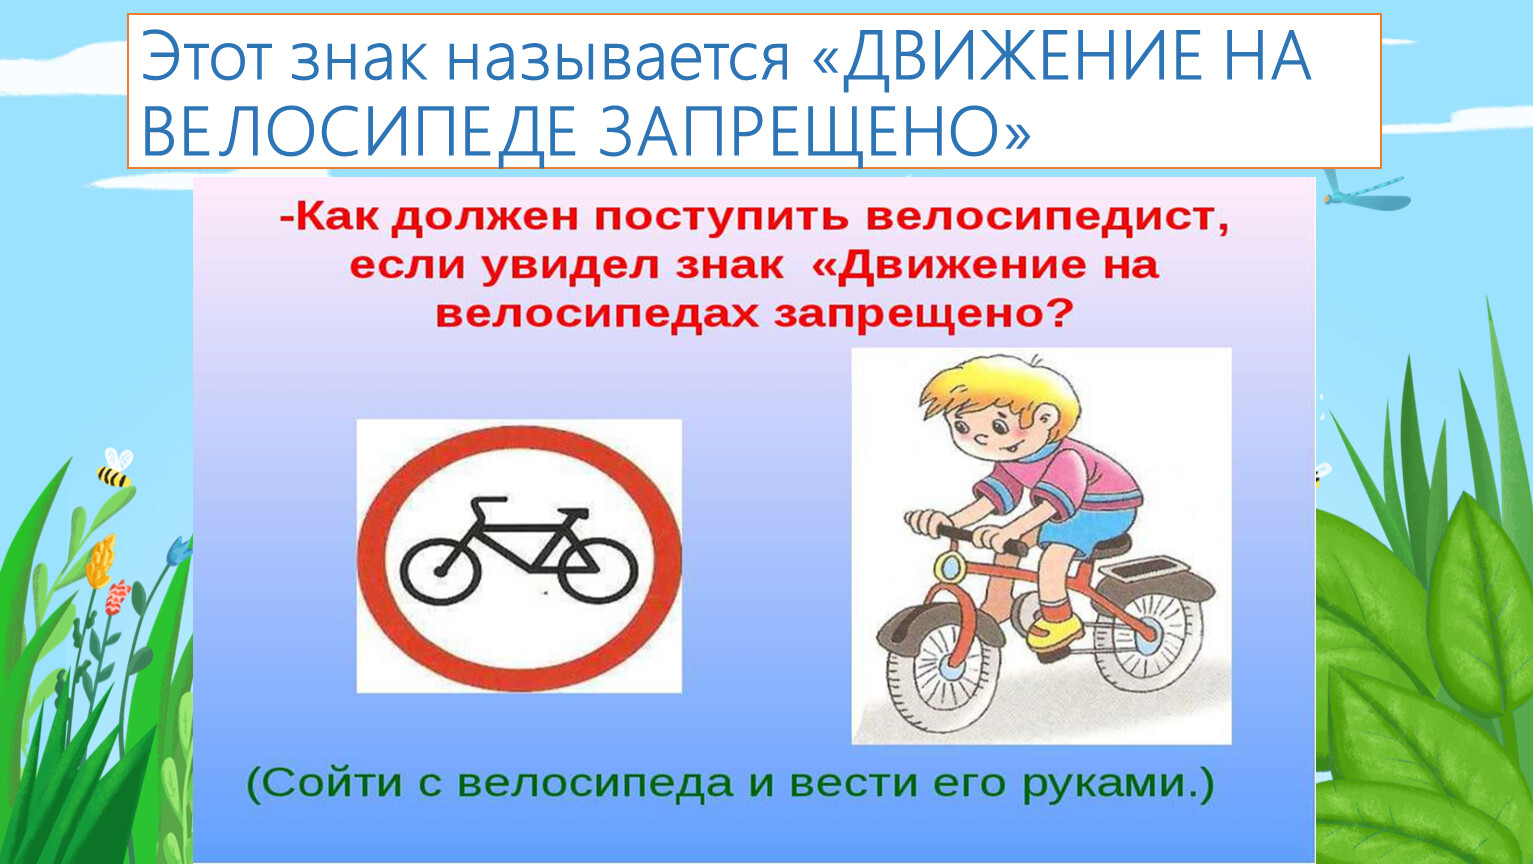 Что означает знак велосипед в красном круге. Знак велосипед и человек. Как называется знак движение на велосипеде запрещено. Как называются велосипедные знаки. Знак велосипедная дорожка запрещена.